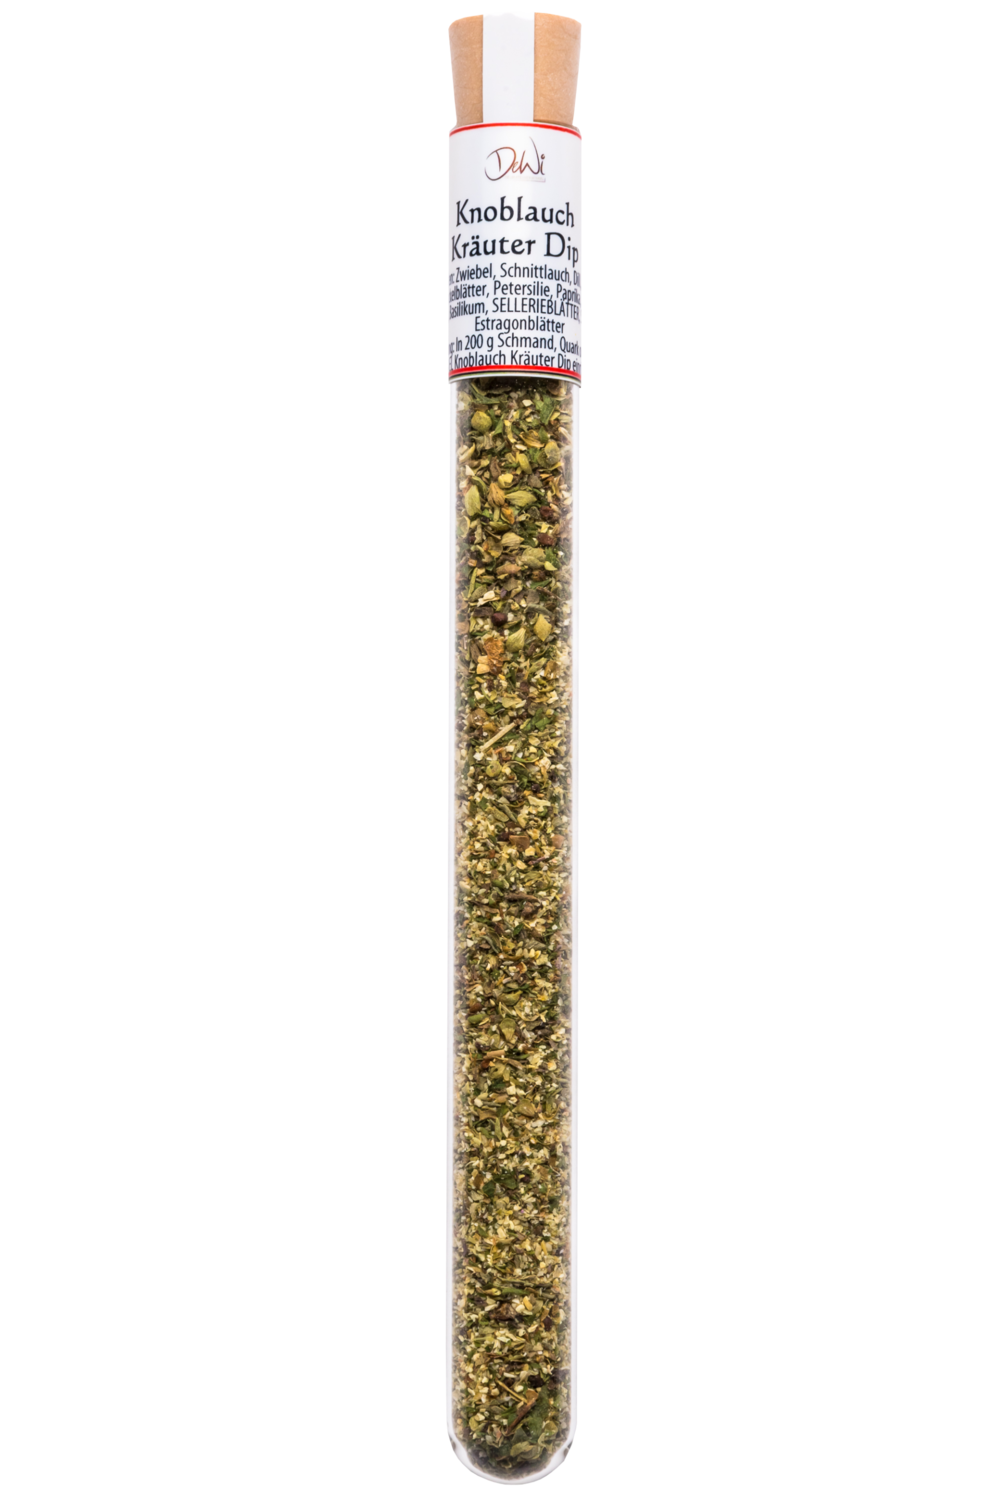 Knoblauch Kräuter Dip im Reagenzglas - Inhalt 5 g (590,00 €/kg)